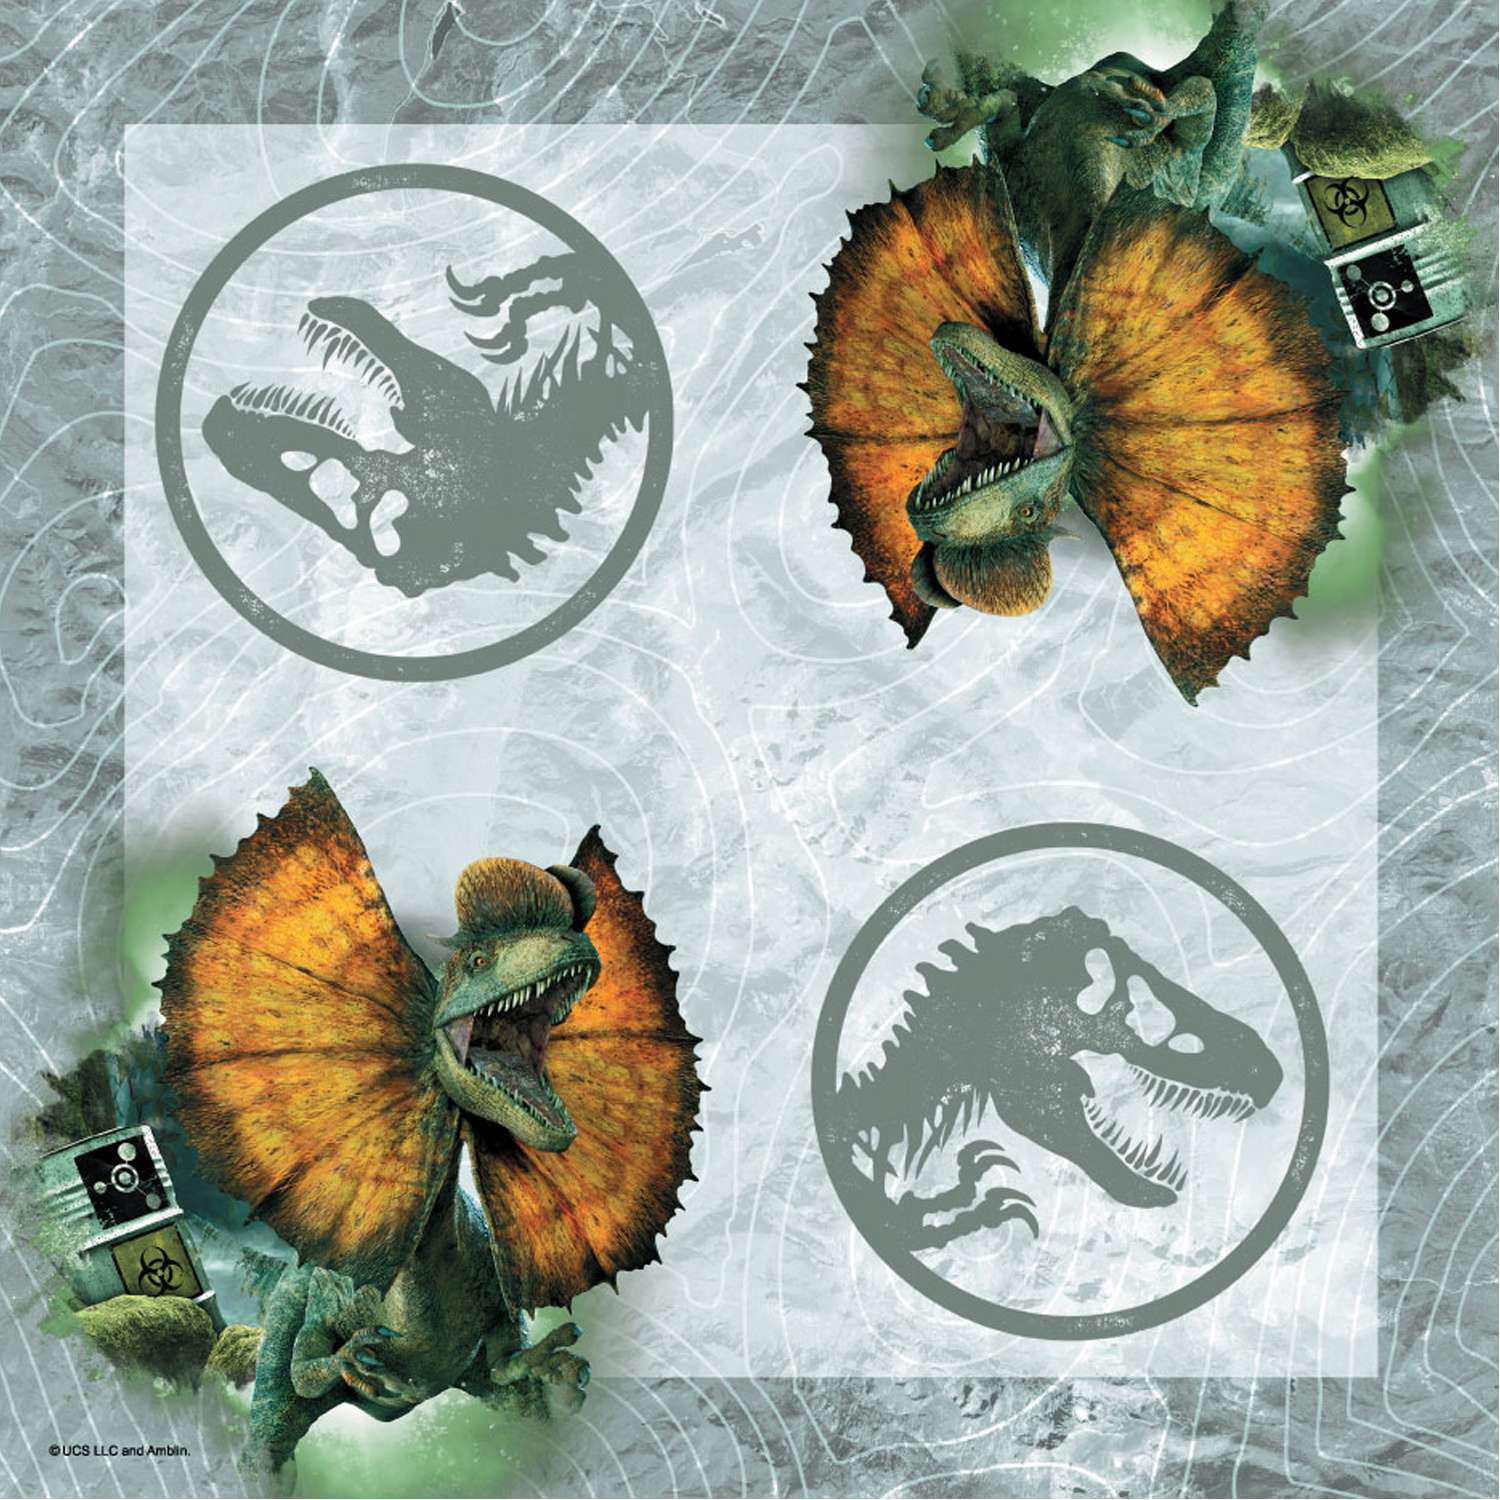 Салфетки ND PLAY Jurassic World бумажные трехслойные 33*33см 40шт - фото 2